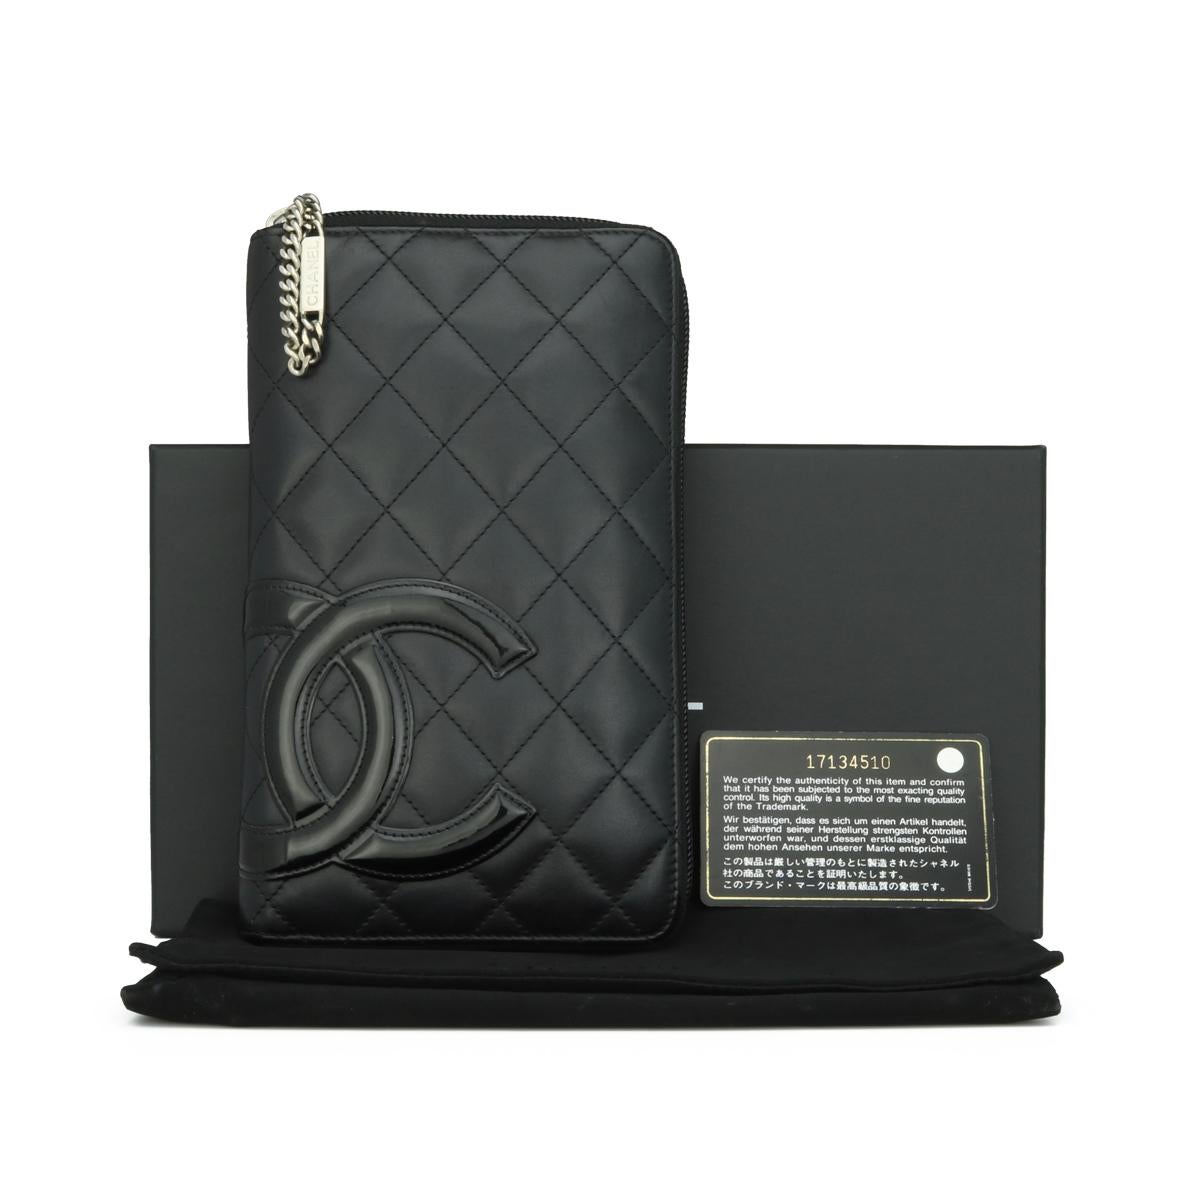 CHANEL Quilted Cambon Large Long Zipped Wallet Black Calfskin with Silver-Tone Hardware 2013.

Ce superbe grand portefeuille zippé est en bon état. Il conserve sa forme d'origine et le matériel est encore très brillant. C'est un portefeuille long